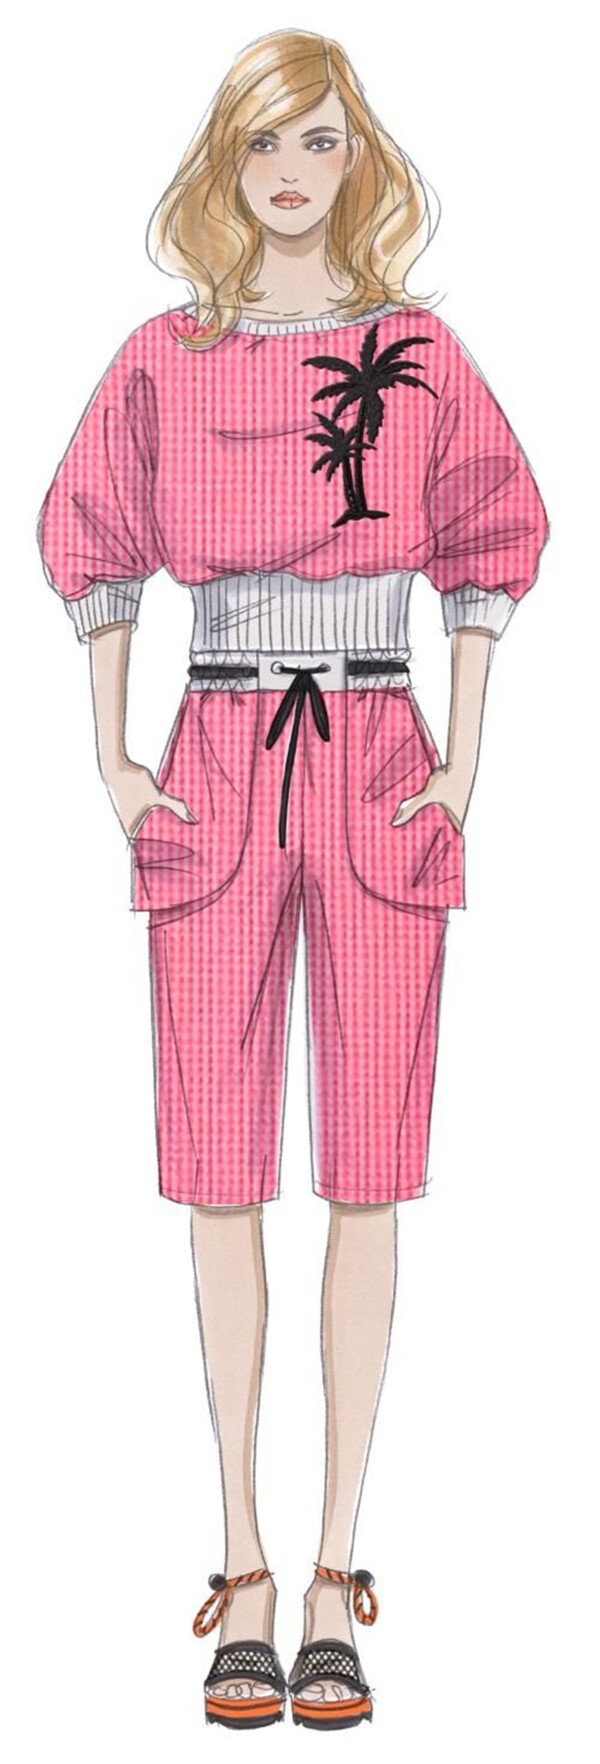 时尚风格粉色连体裤女装效果图